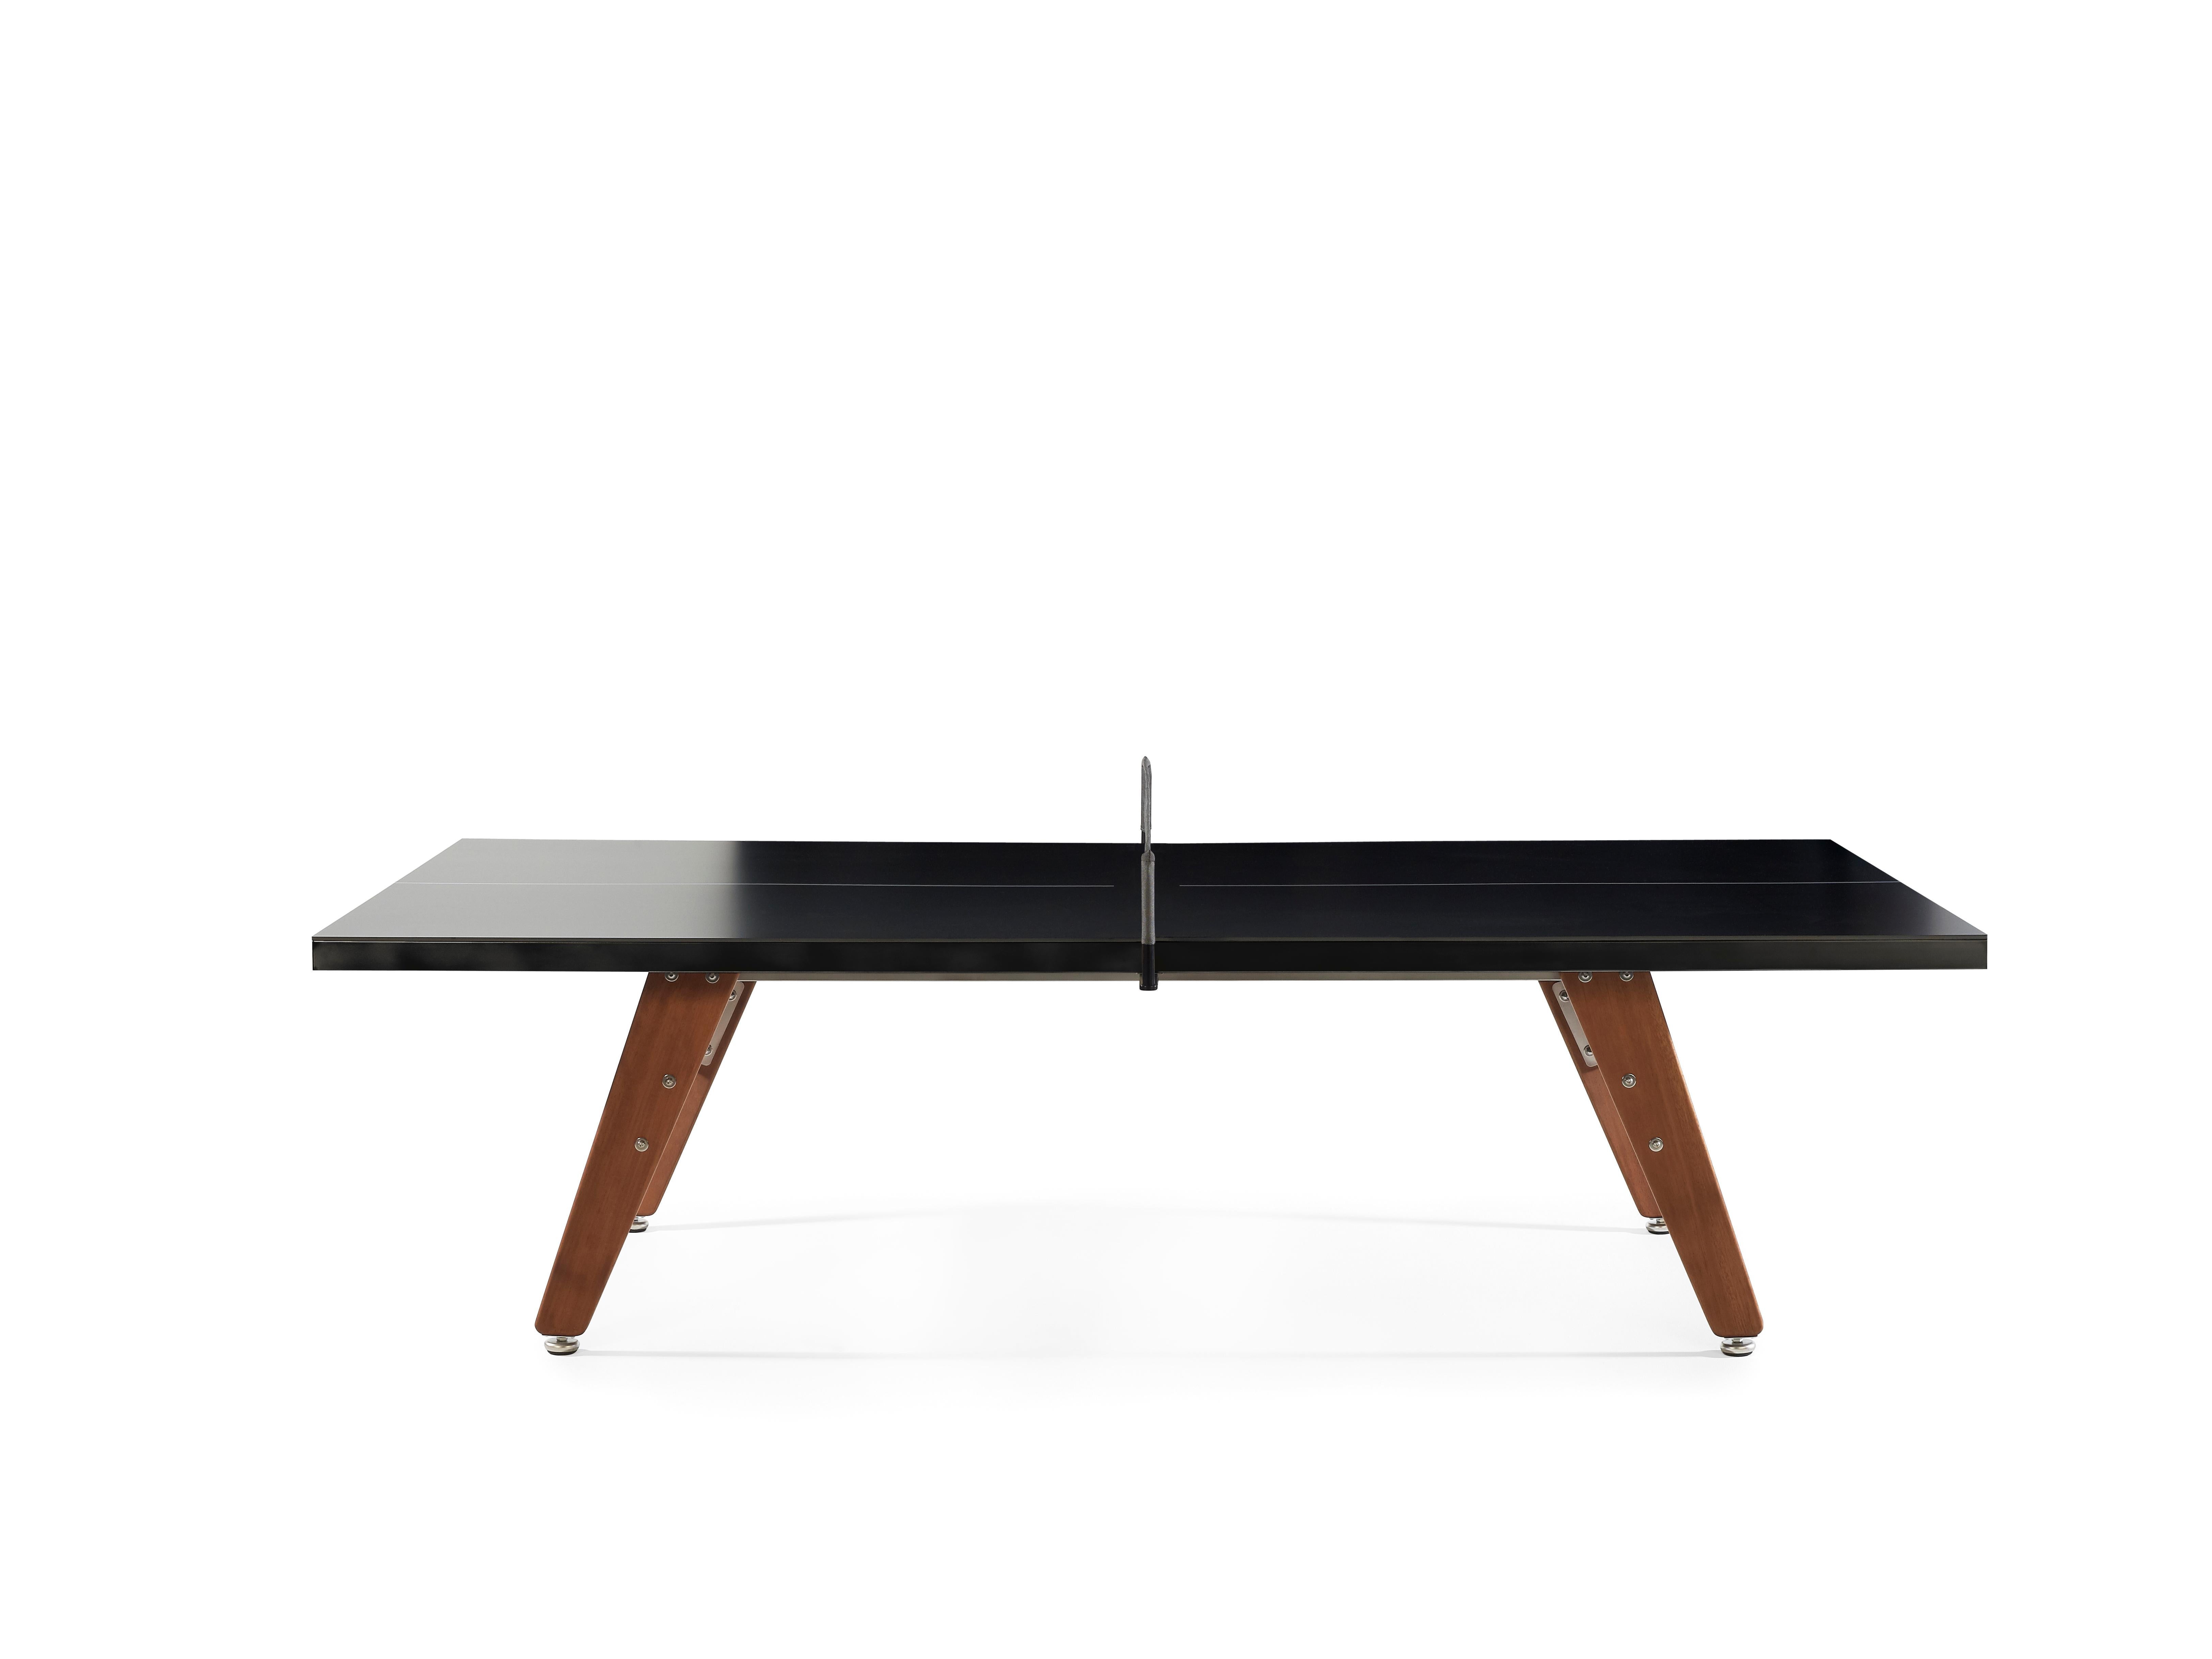 La table de ping-pong RS Stationary, avec son plateau en HPL noir et ses pieds en bois d'iroko, est le complément pongiste de nos tables de baby-foot RS3 Wood. Il s'agit d'une table de ping-pong complète, de taille réglementaire, convenant à un